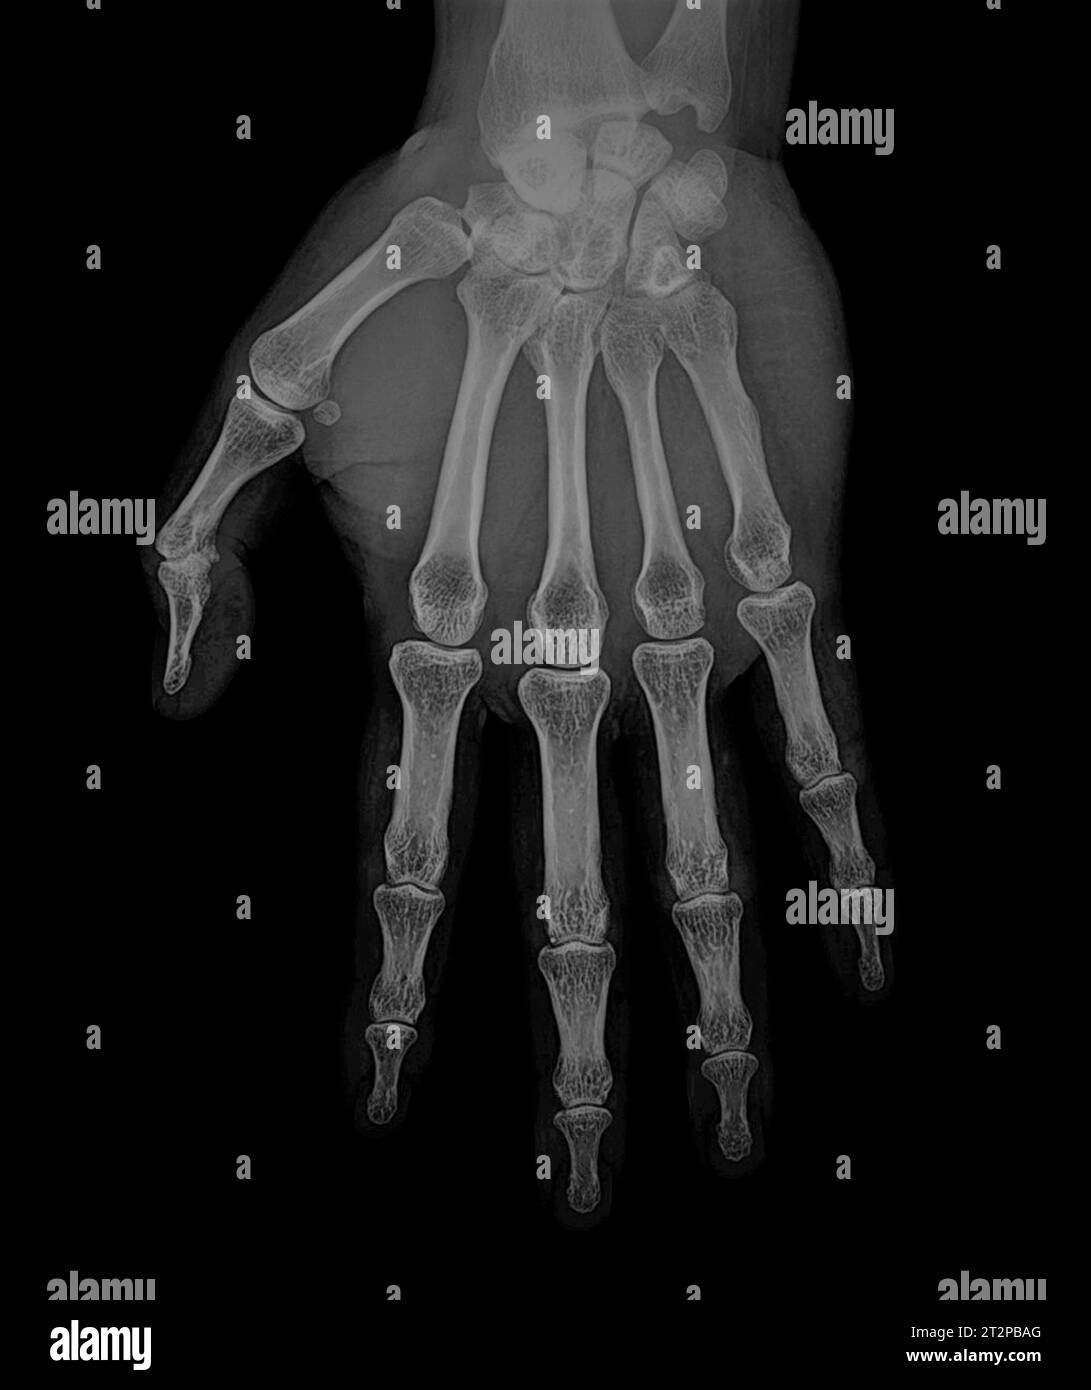 Healthy hand, X-ray Stock Photo